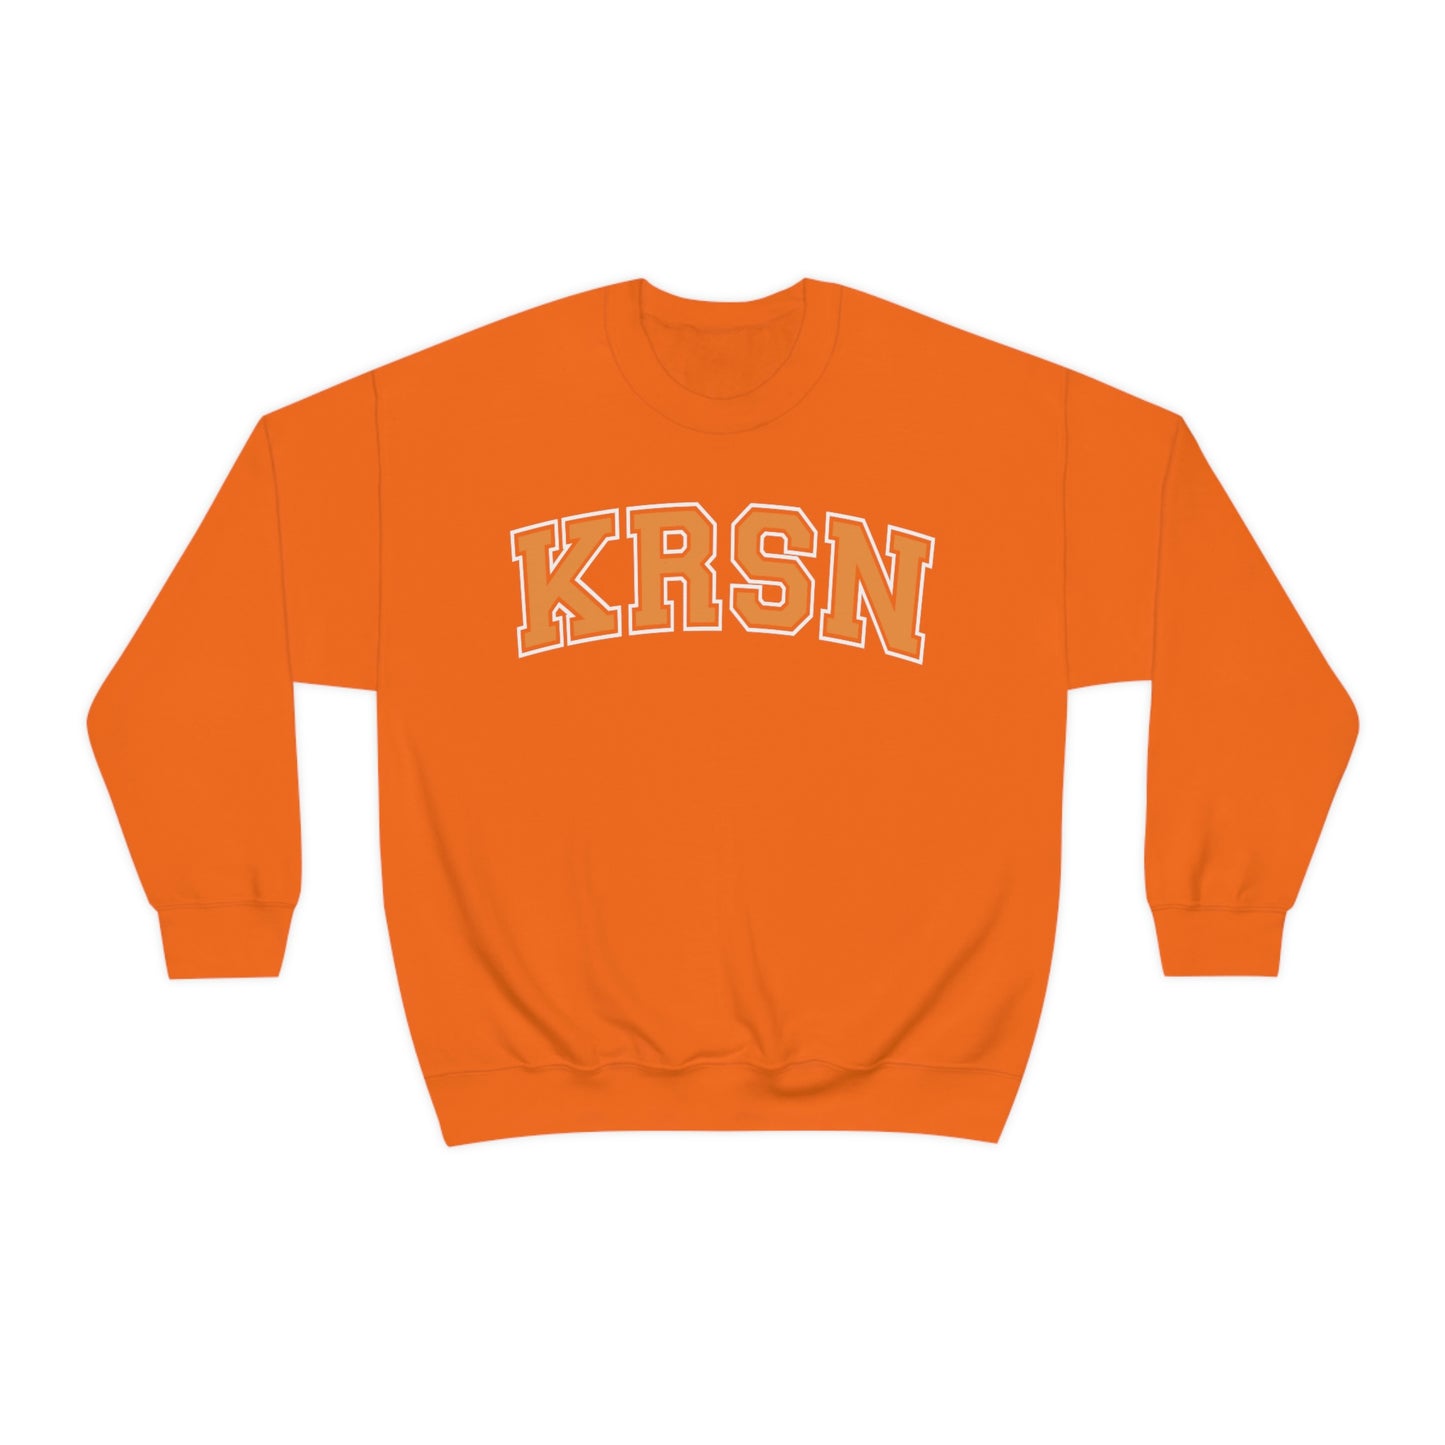 KRSN Crewneck Sweatshirt Volleyball College Nekomas KRSN High Volleyball Club FLY Karasuns sweater